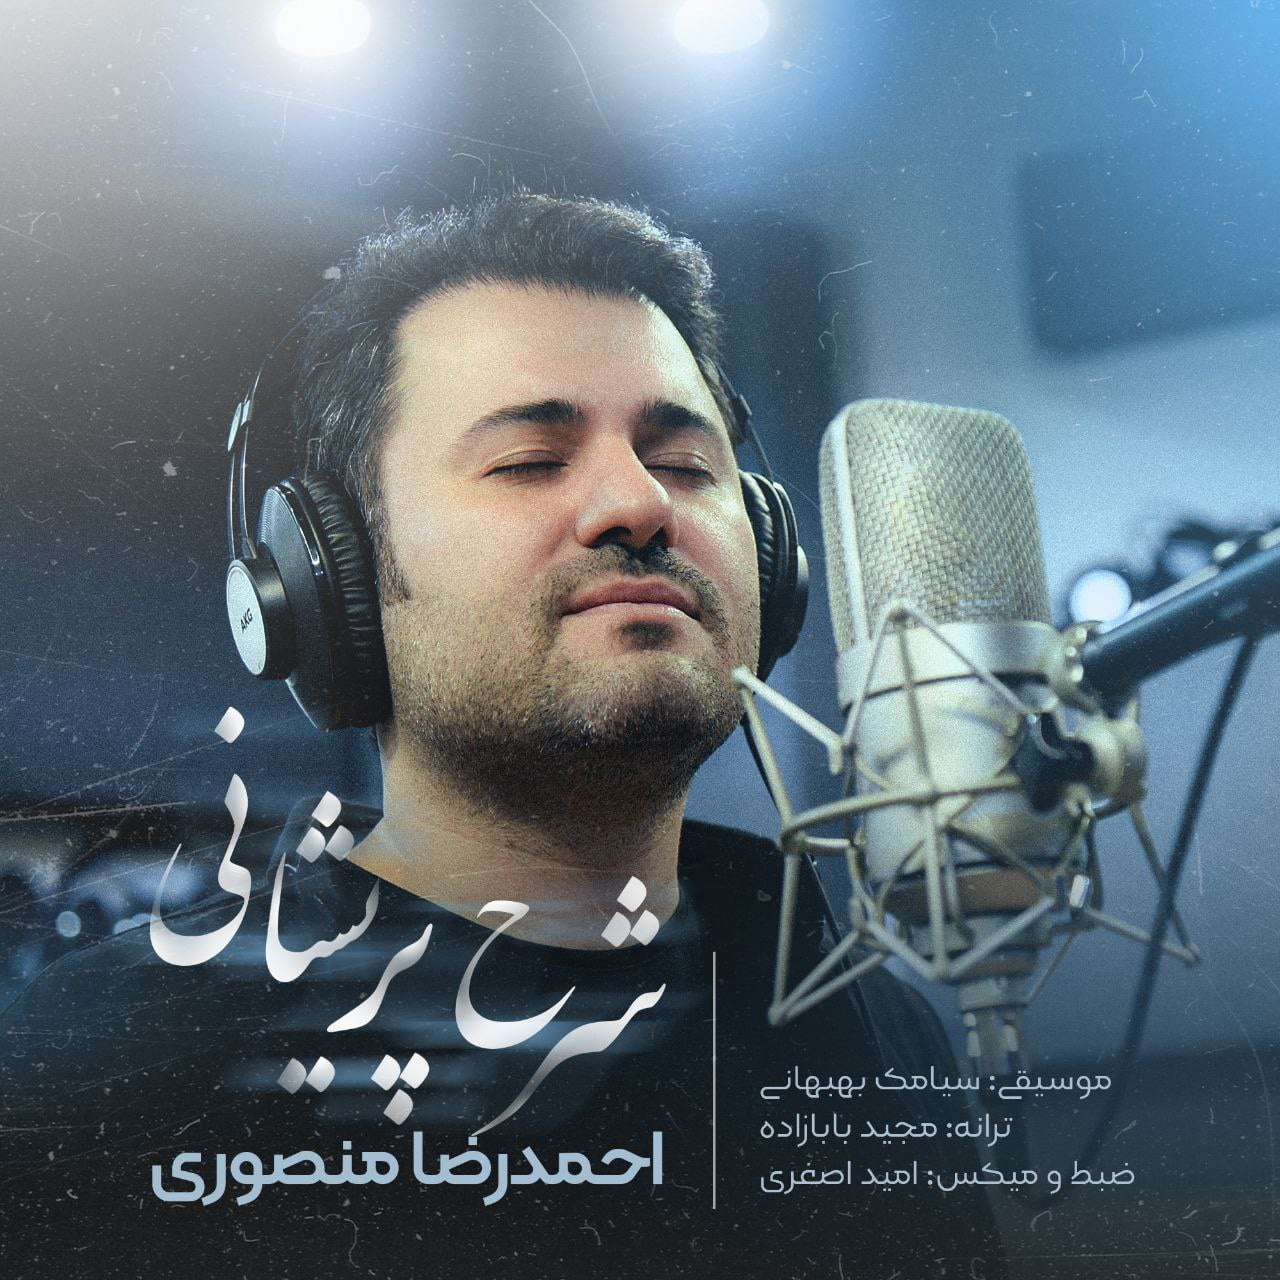 دانلود آهنگ جدید احمد رضا منصوری با عنوان شرح پریشانی